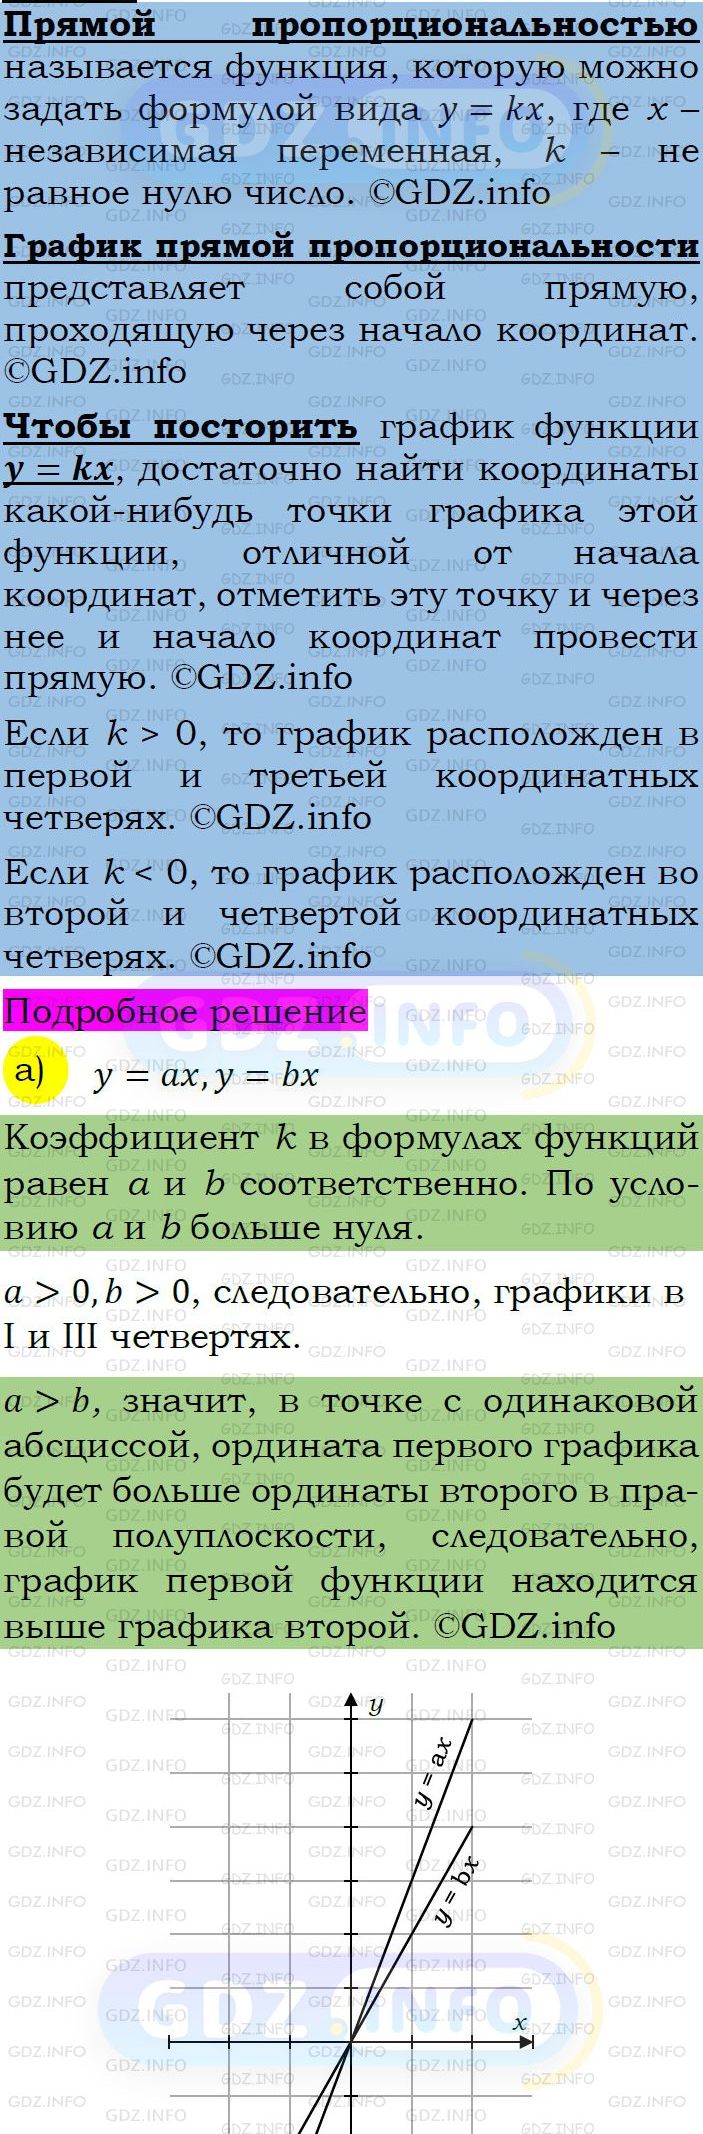 Фото подробного решения: Номер задания №377 из ГДЗ по Алгебре 7 класс: Макарычев Ю.Н.